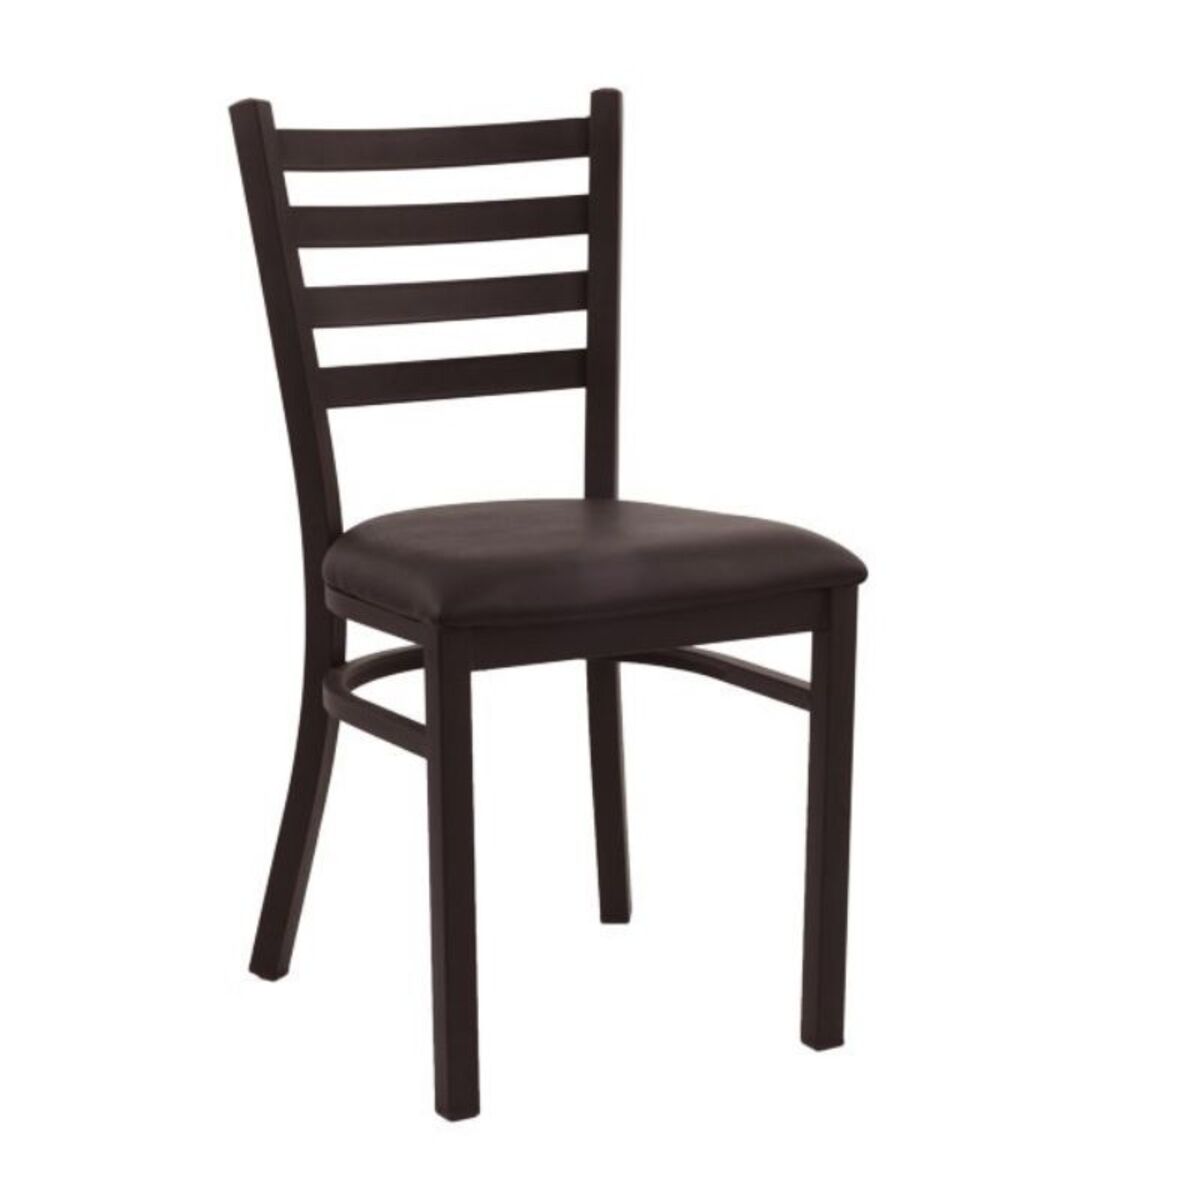 Chaise de bistrot en acier assise rembourré simili cuir coloris marron